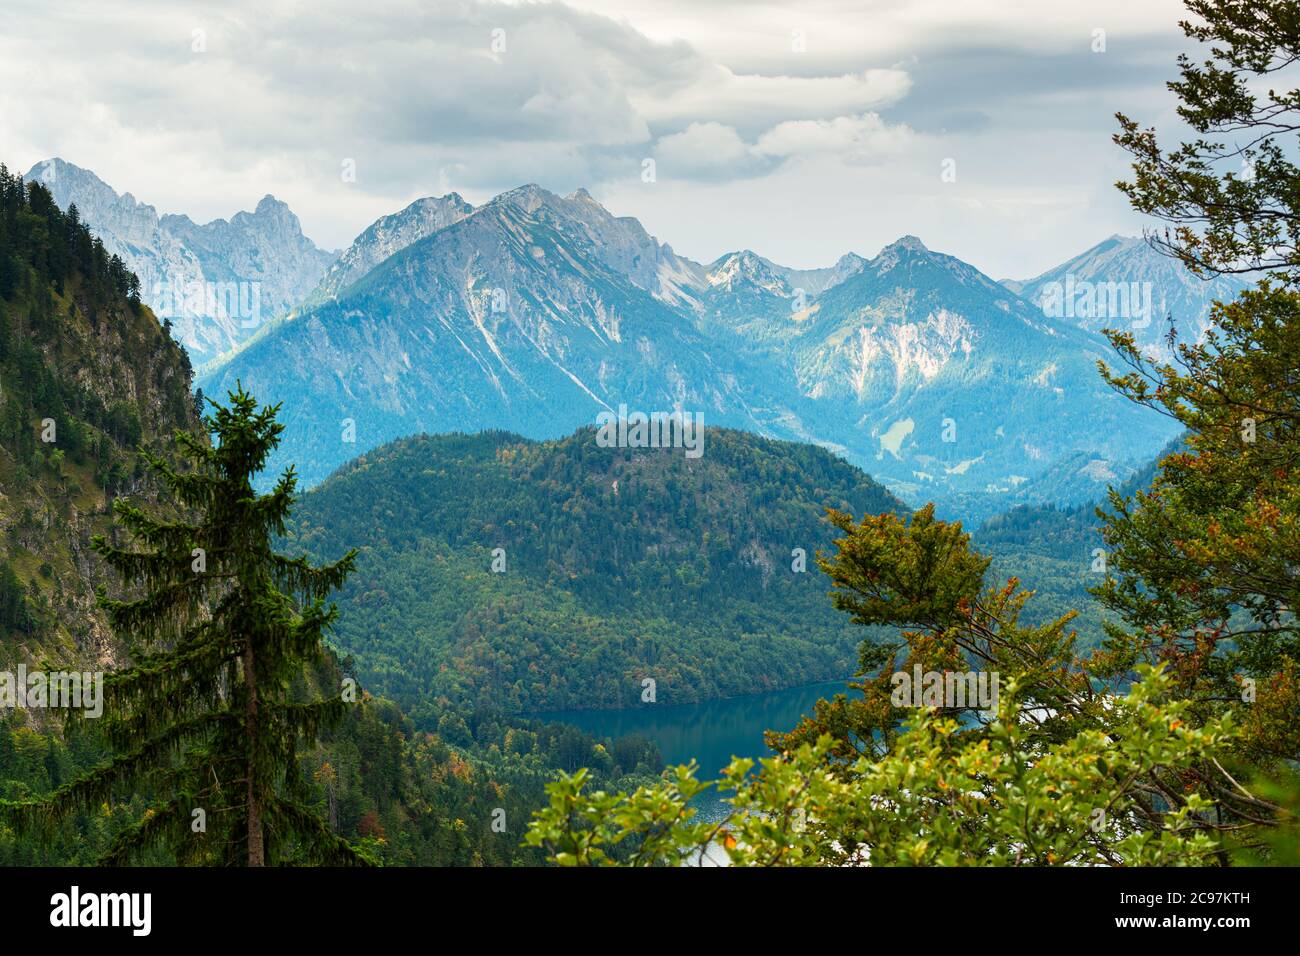 Paisaje de los Alpes bávaros en Fussen, Alemania con el lago Alpsee. Foto de stock